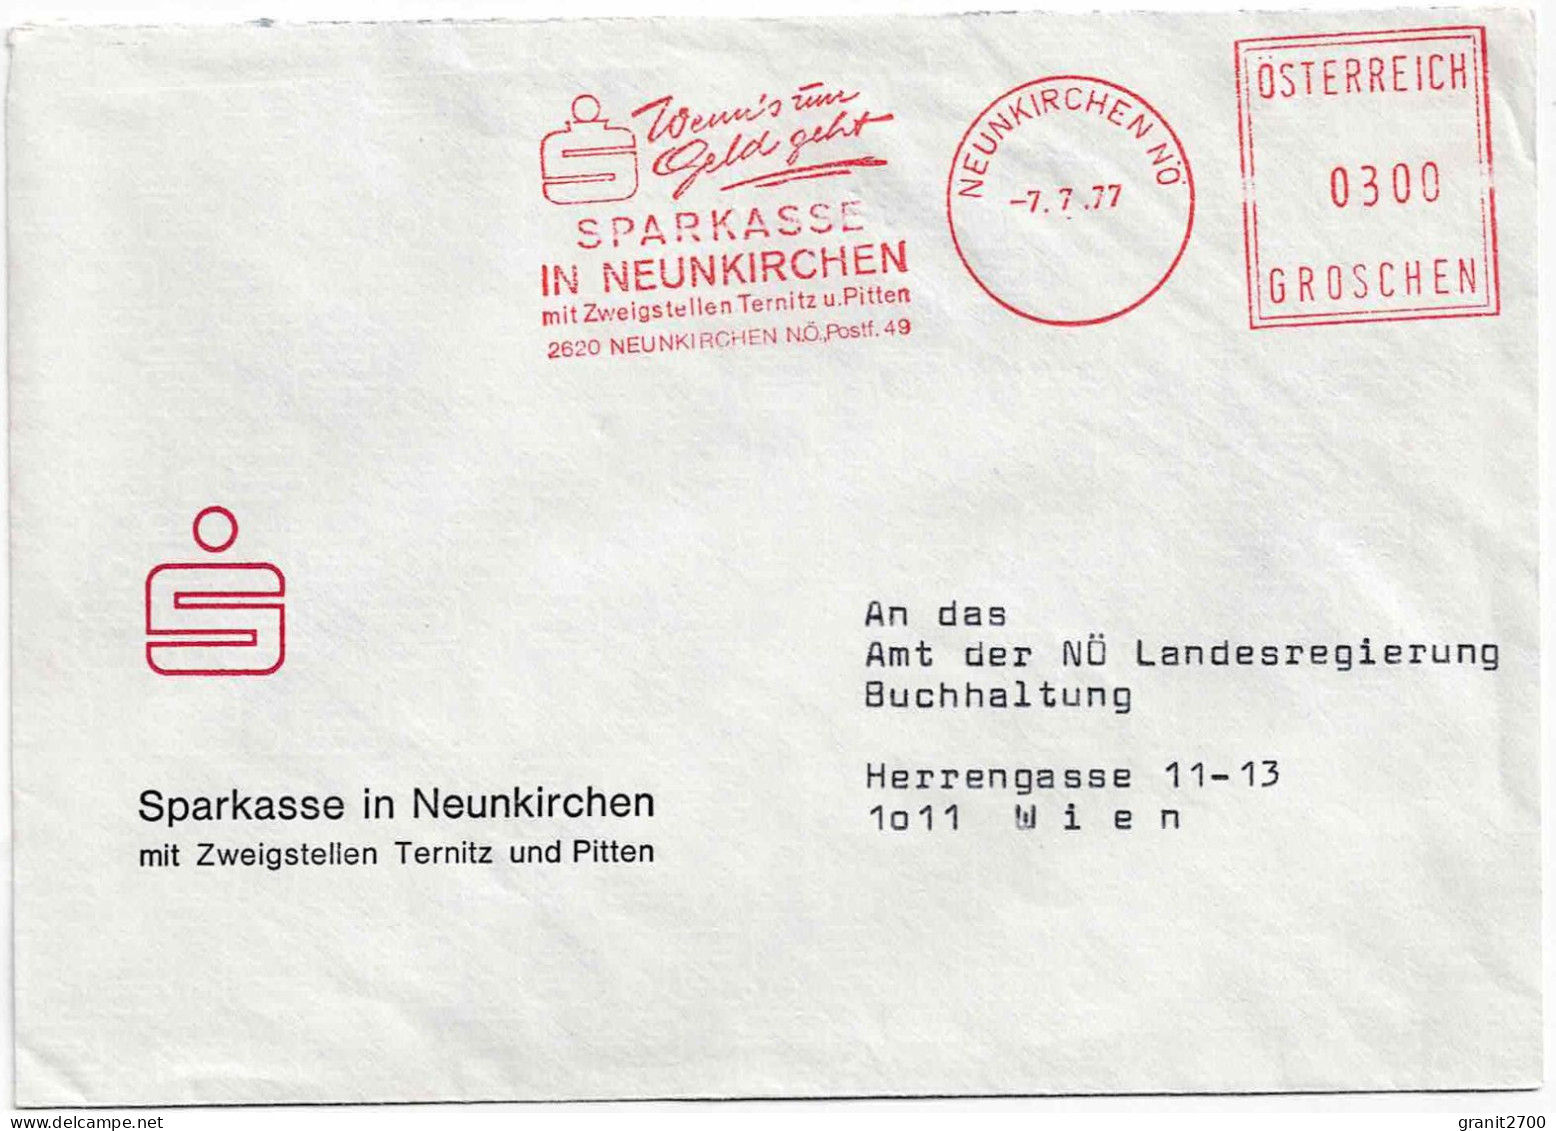 Freistempel mit Werbefunktion auf Kuvert 1970-1980